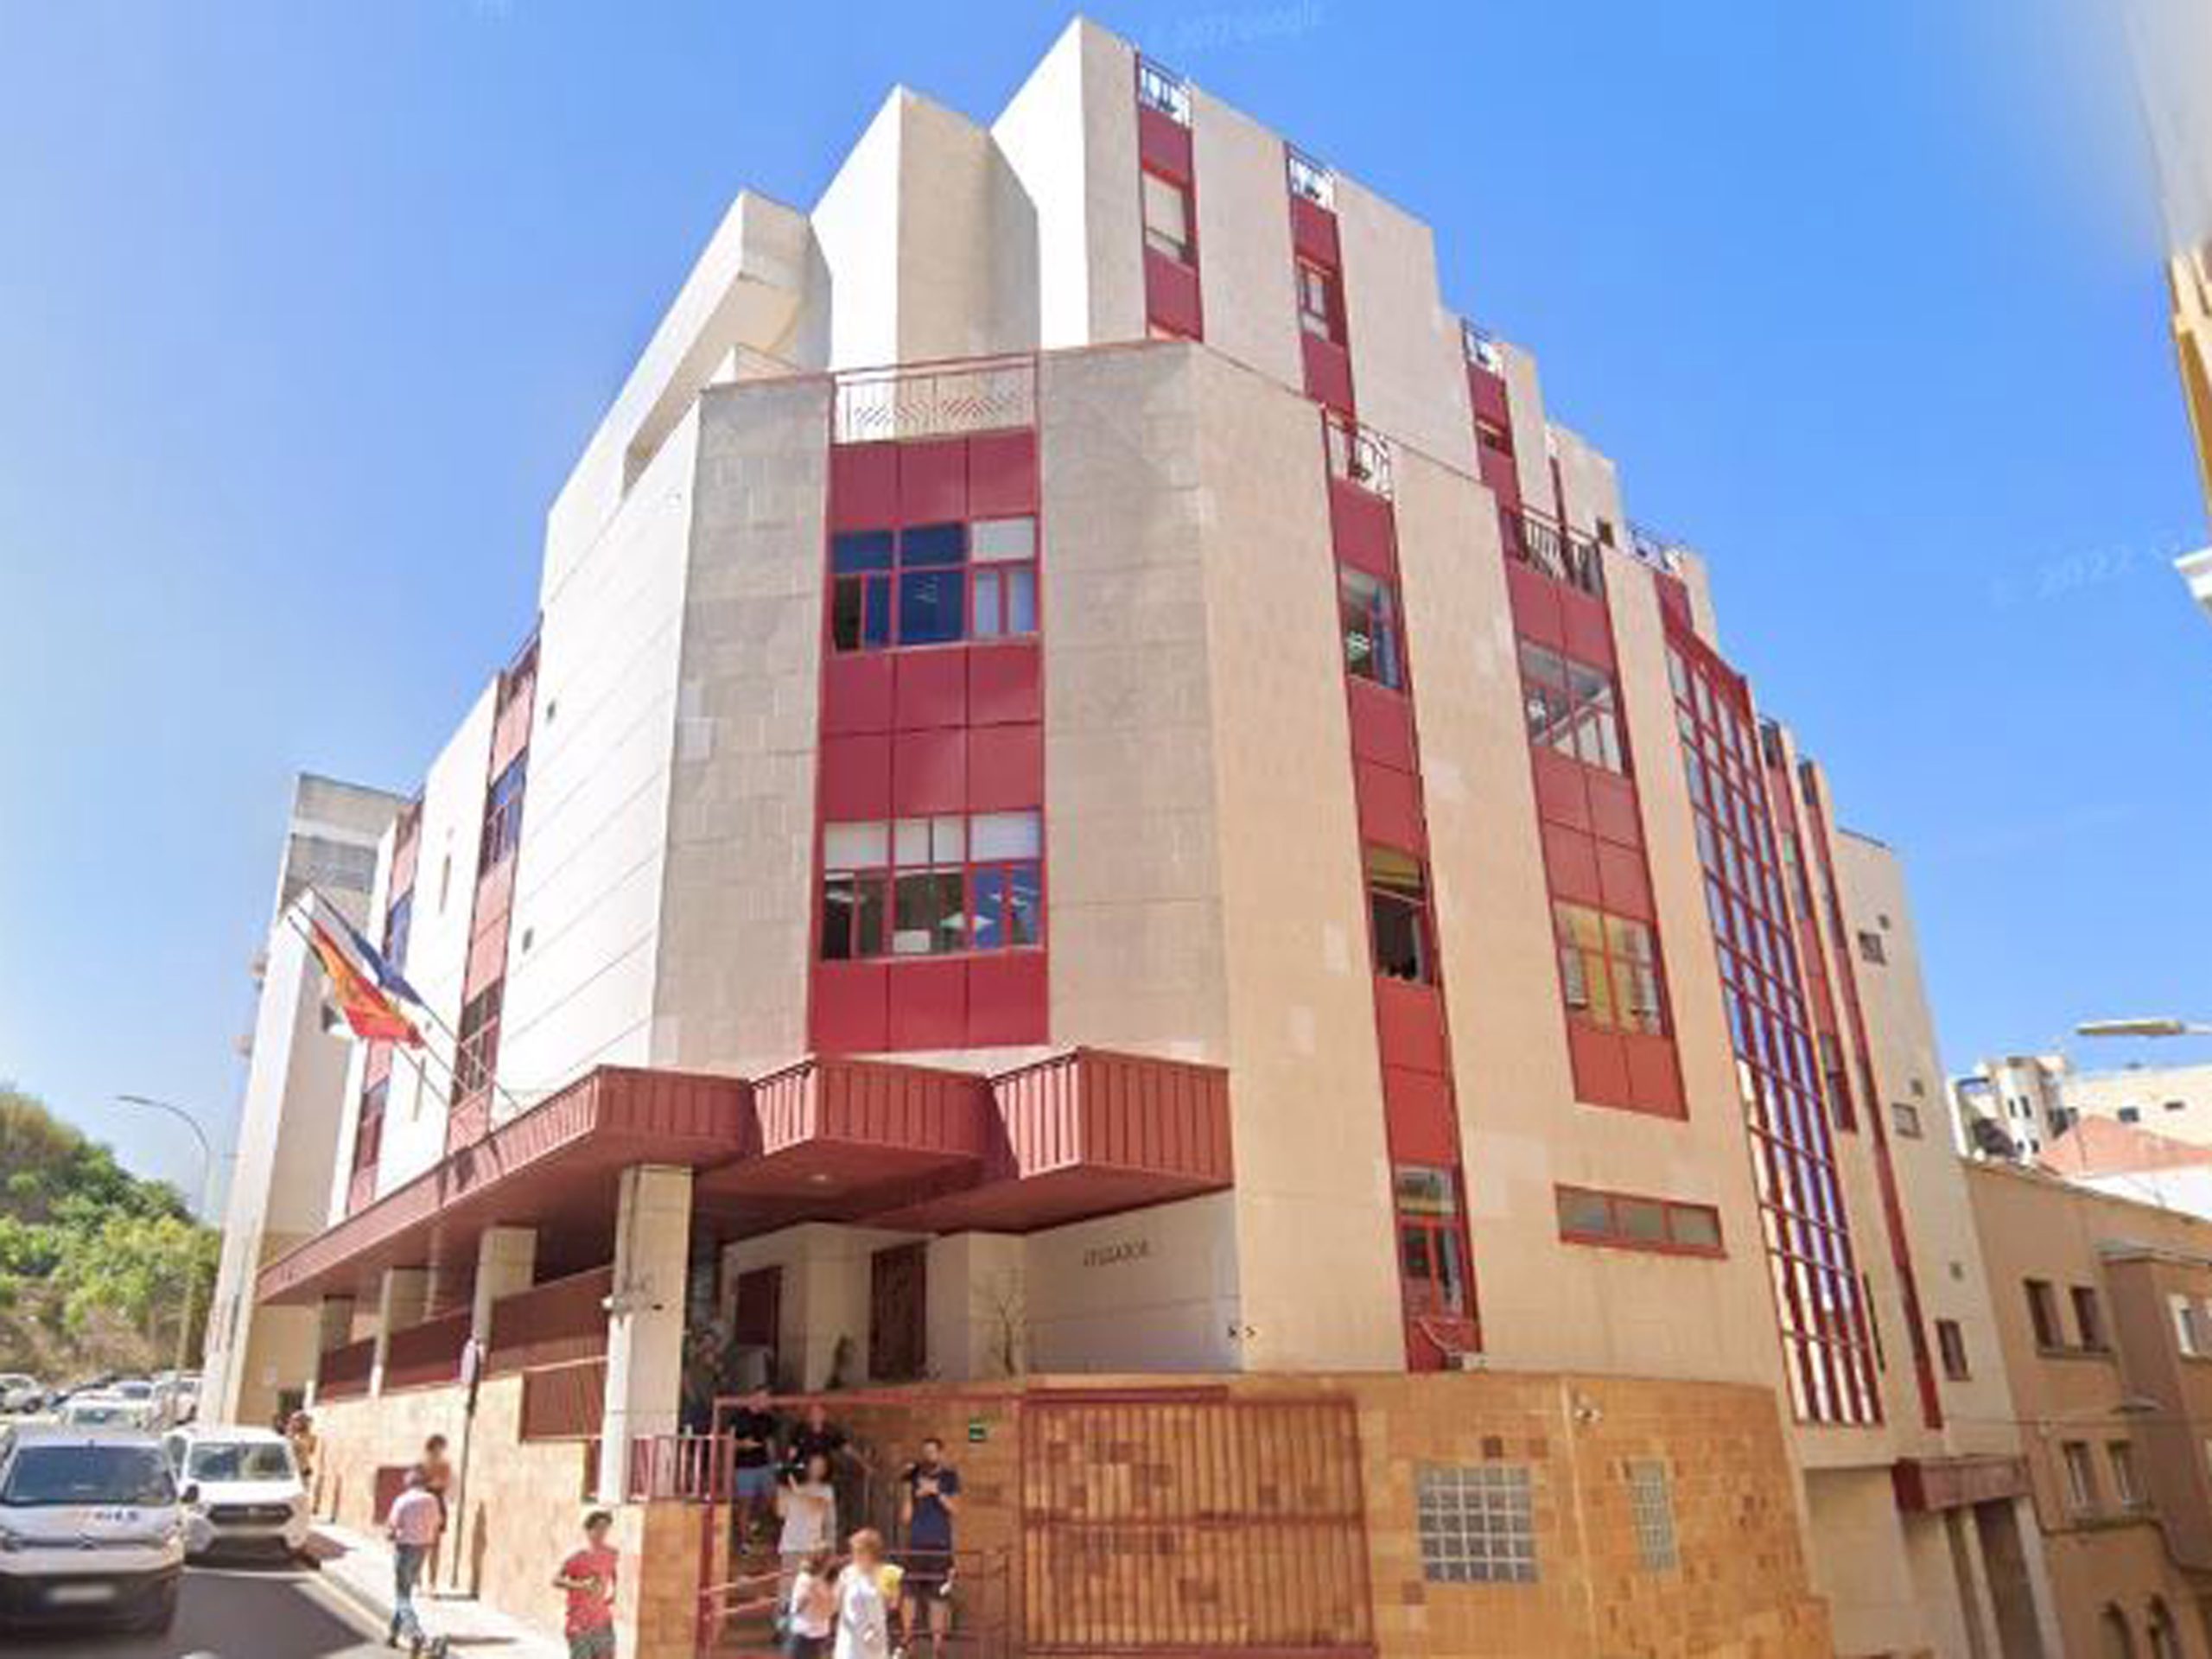 El juzgado de Ceuta perdona una deuda de 247.686 euros a un matrimonio y obliga al banco a rebajar la hipoteca de su vivienda